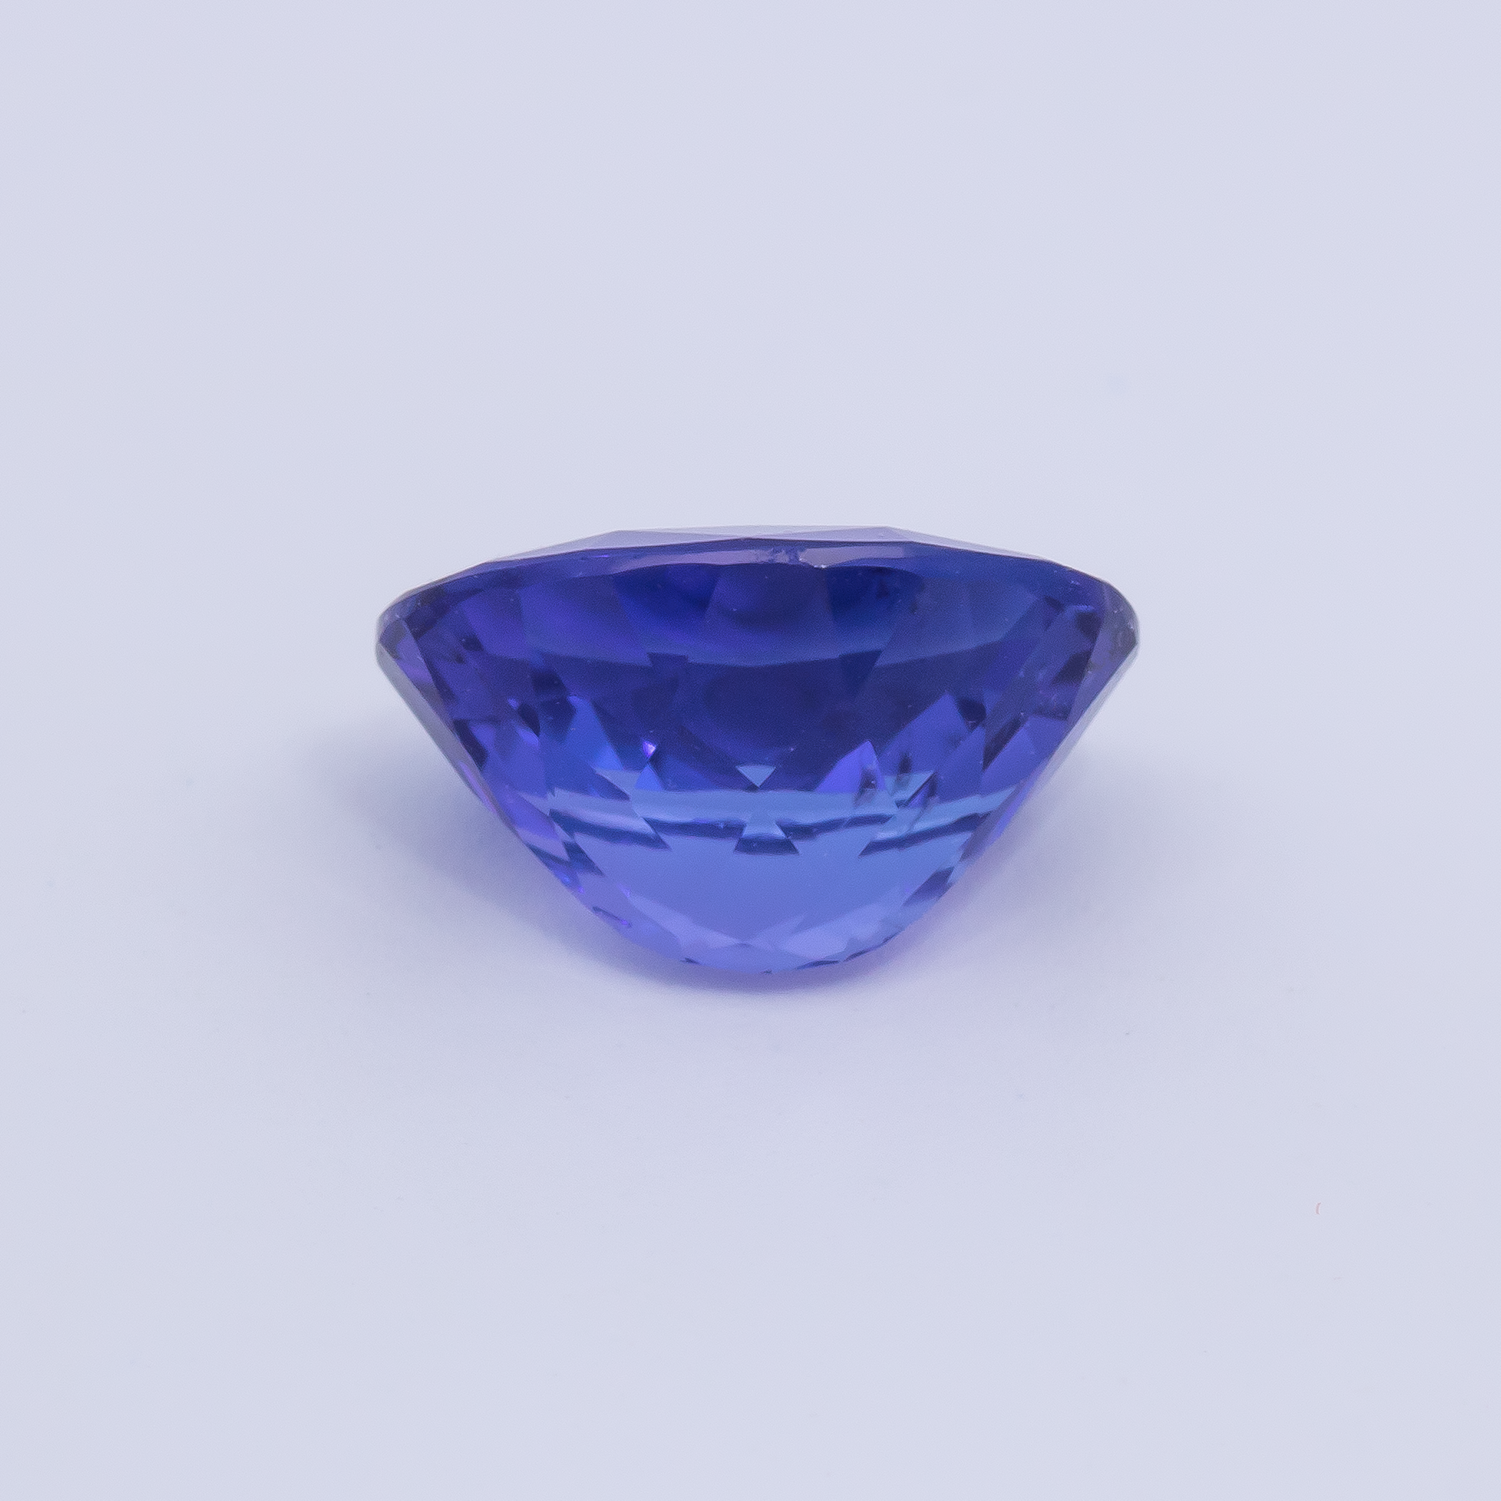 Tansanit - blau, oval, 10.1x8.1 mm, 3.03 cts, Nr. TZ99028